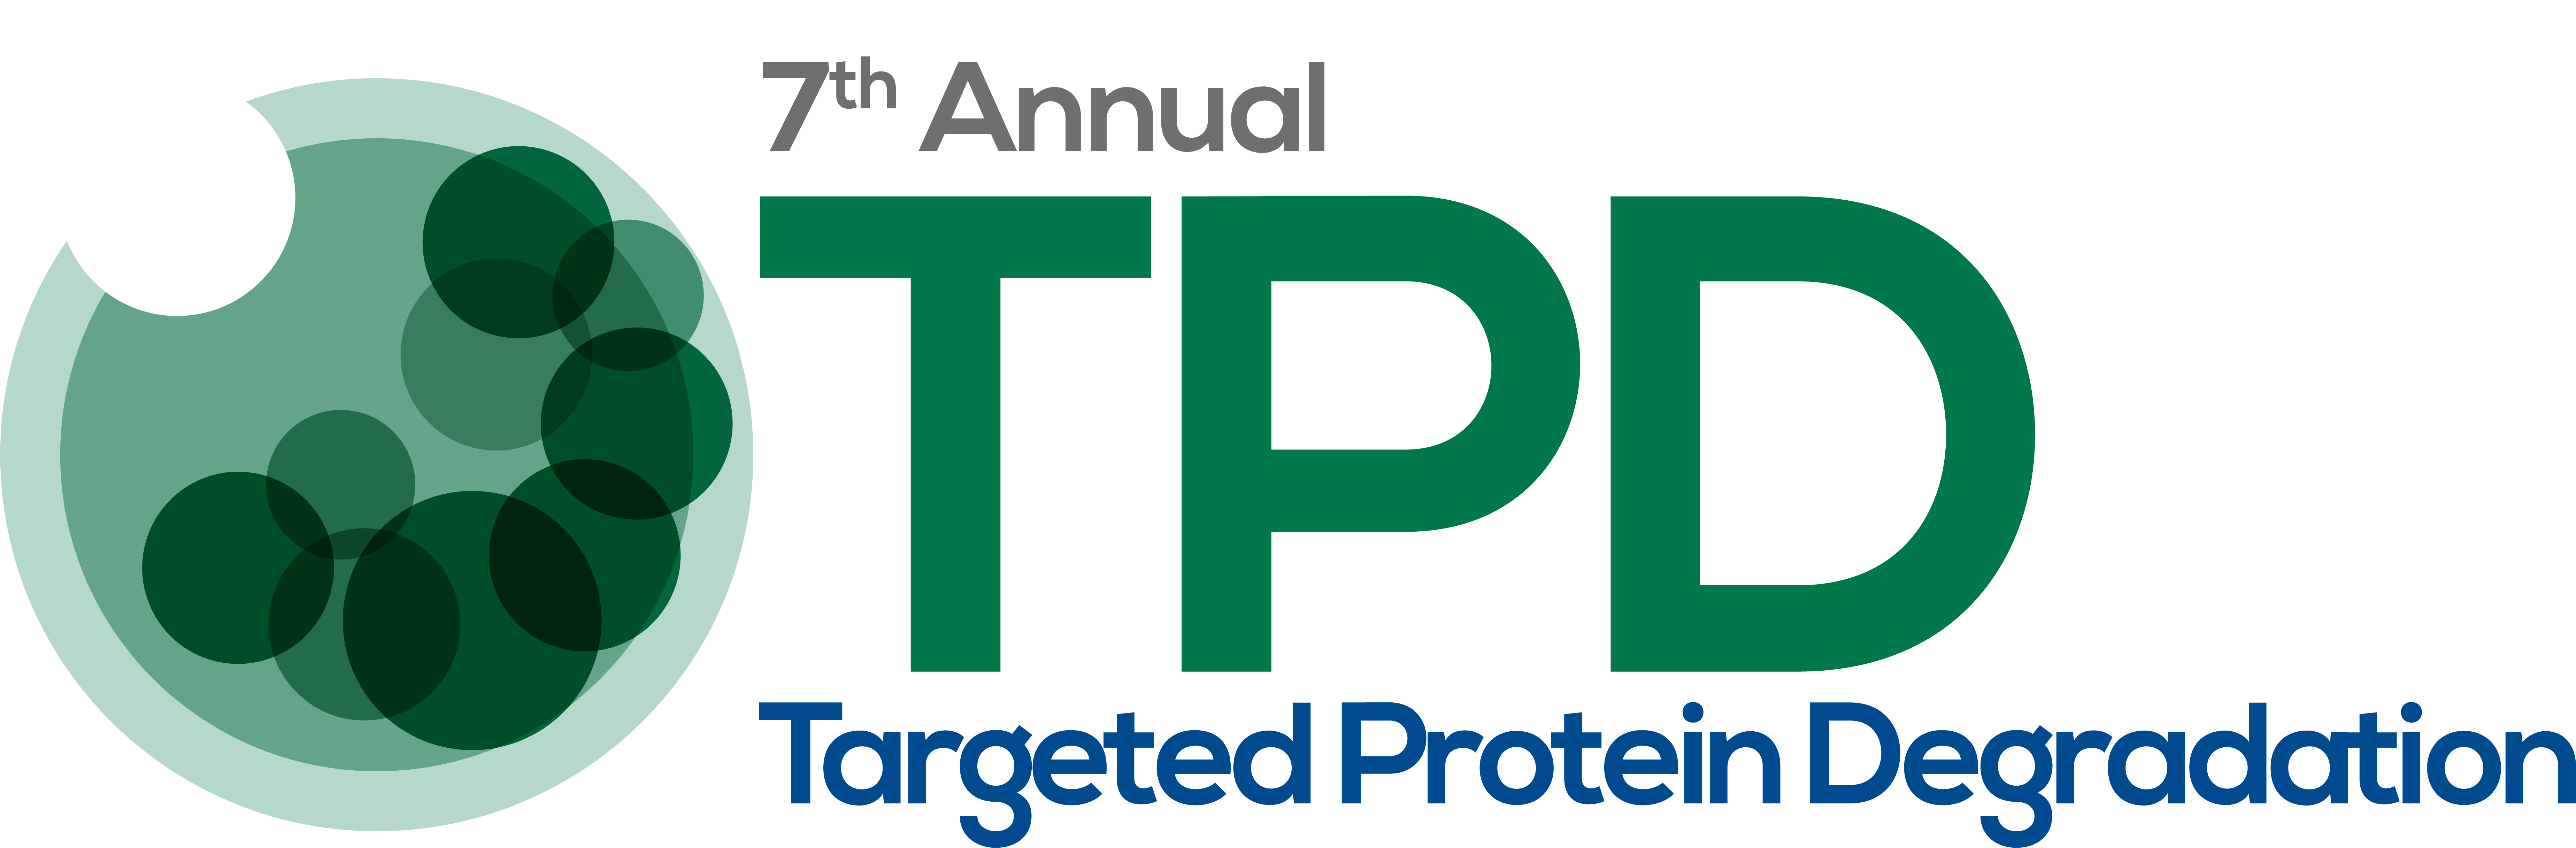 20704 7th TPD Summit 2022 logo